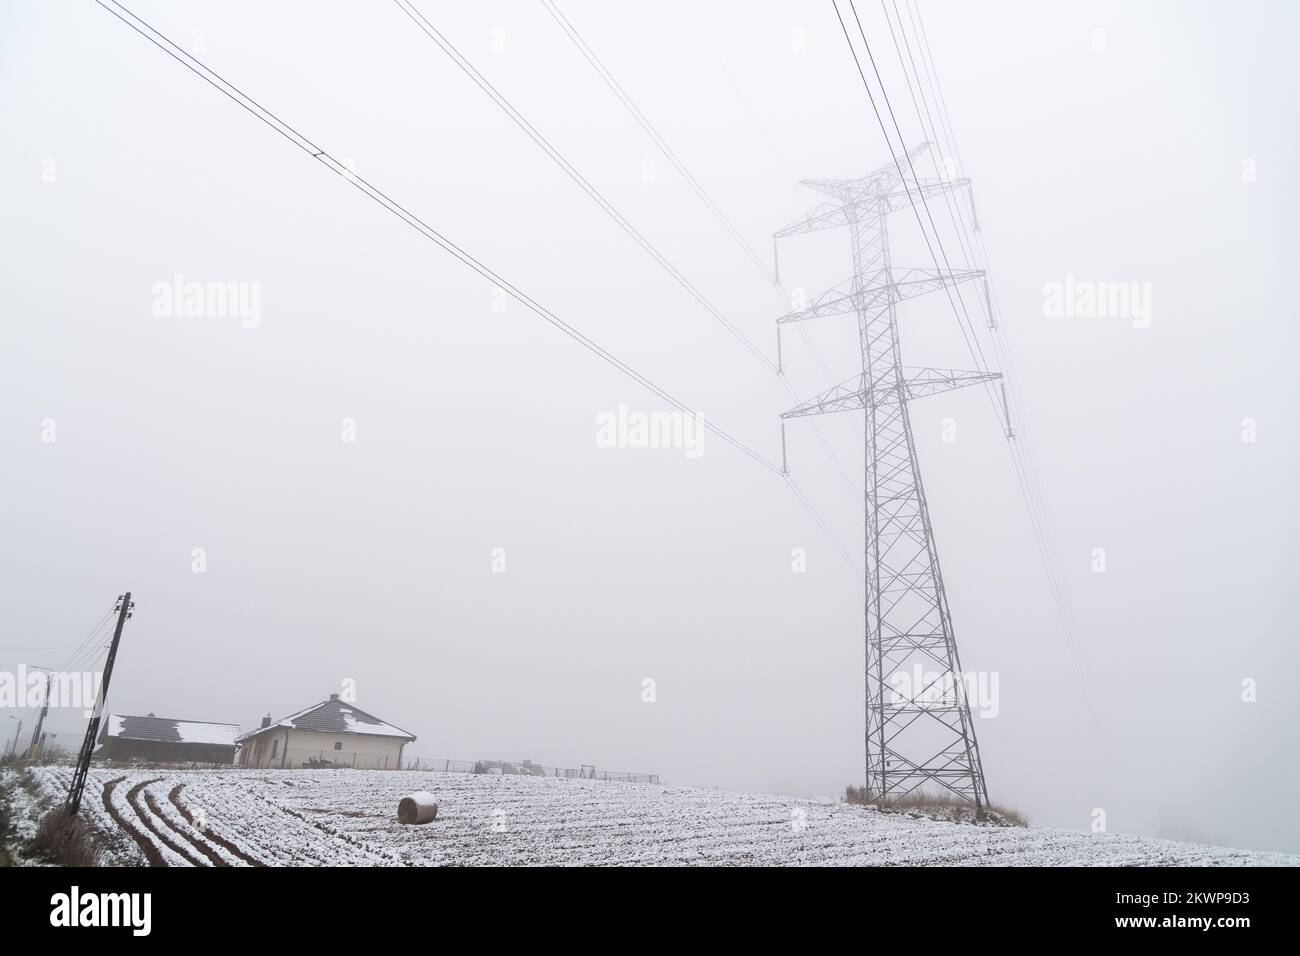 High voltage power lines in Pepowo, Poland © Wojciech Strozyk / Alamy Stock Photo Stock Photo